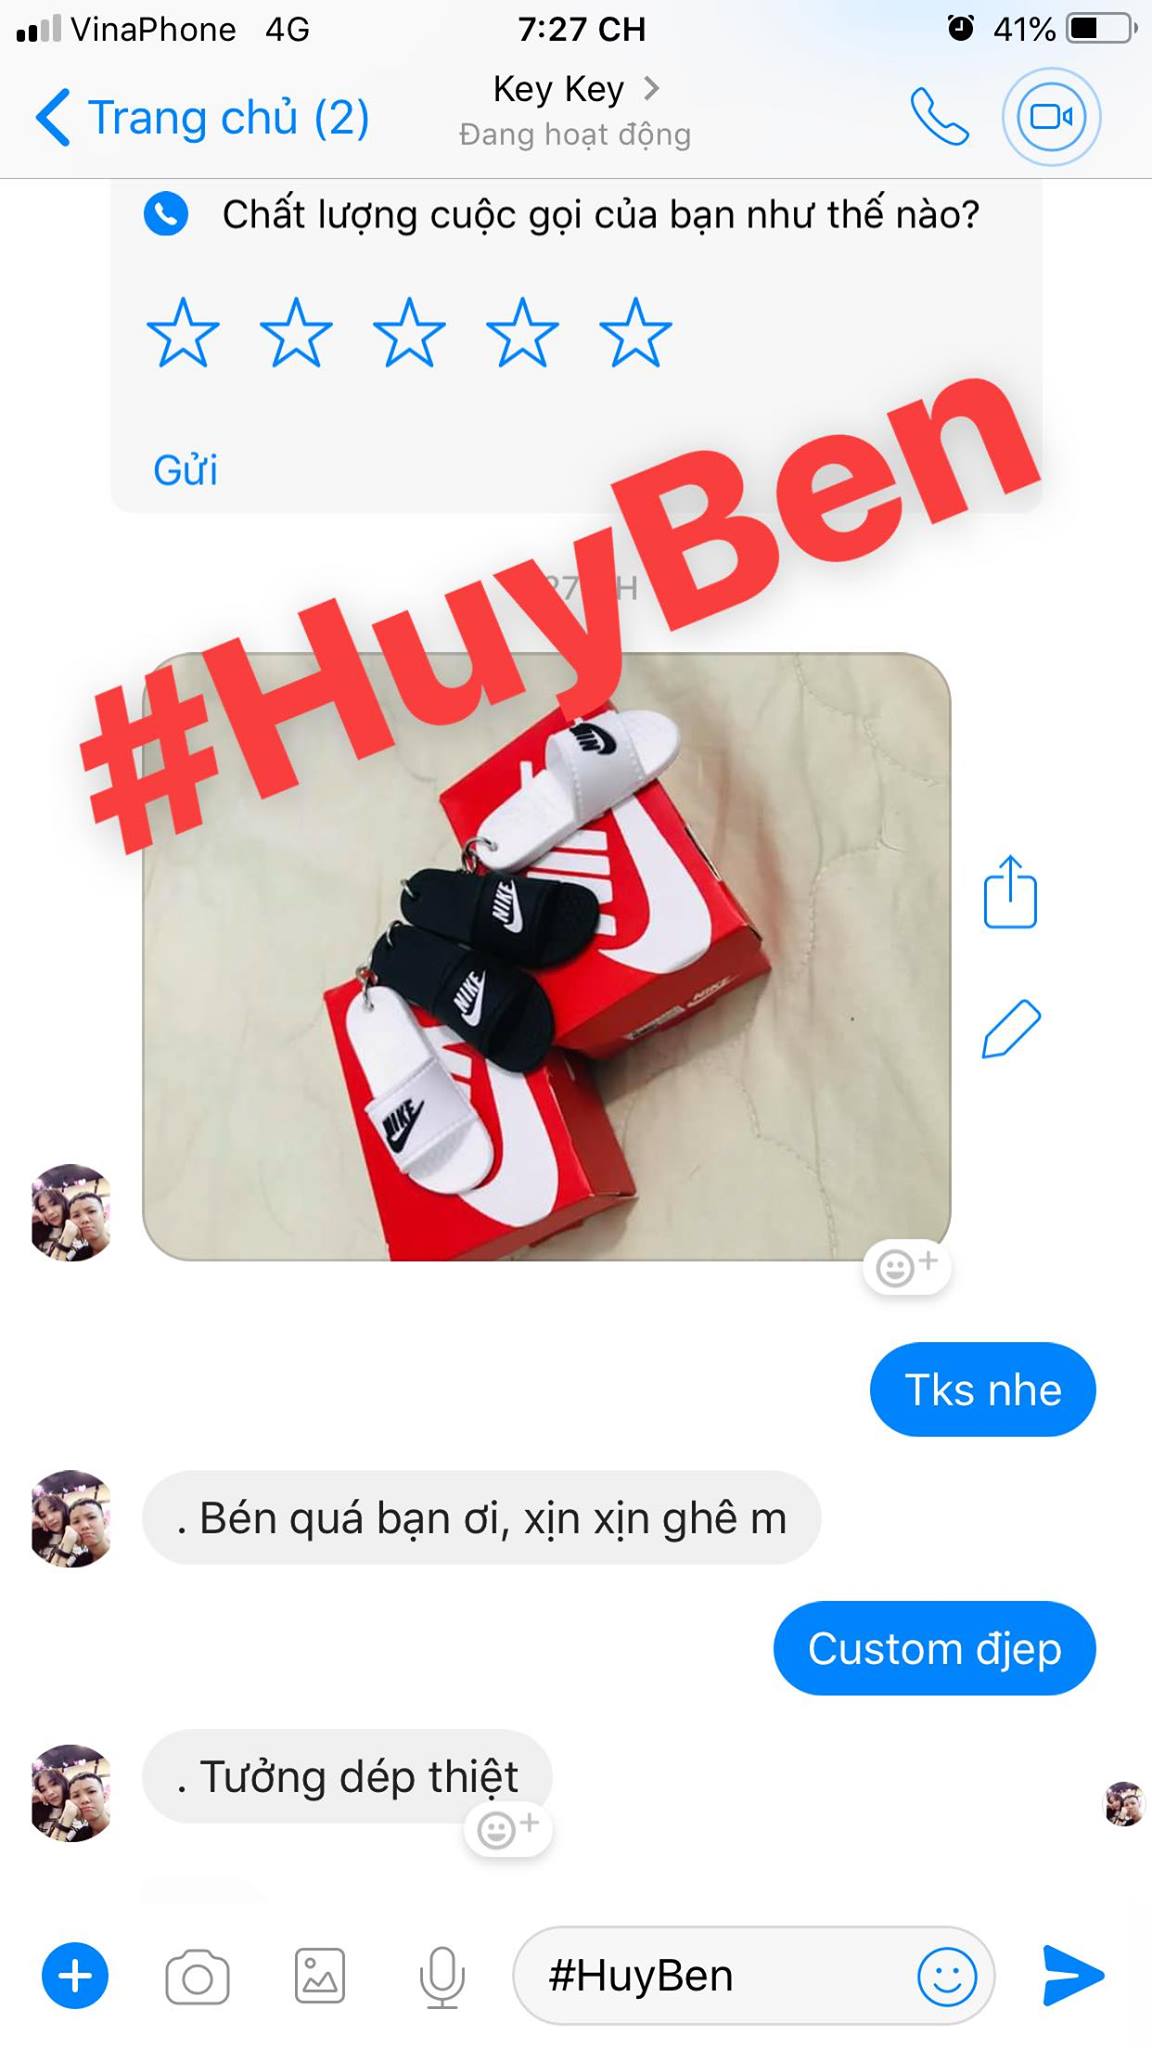 anh Đinh Việt Huy - shop Huy Ben